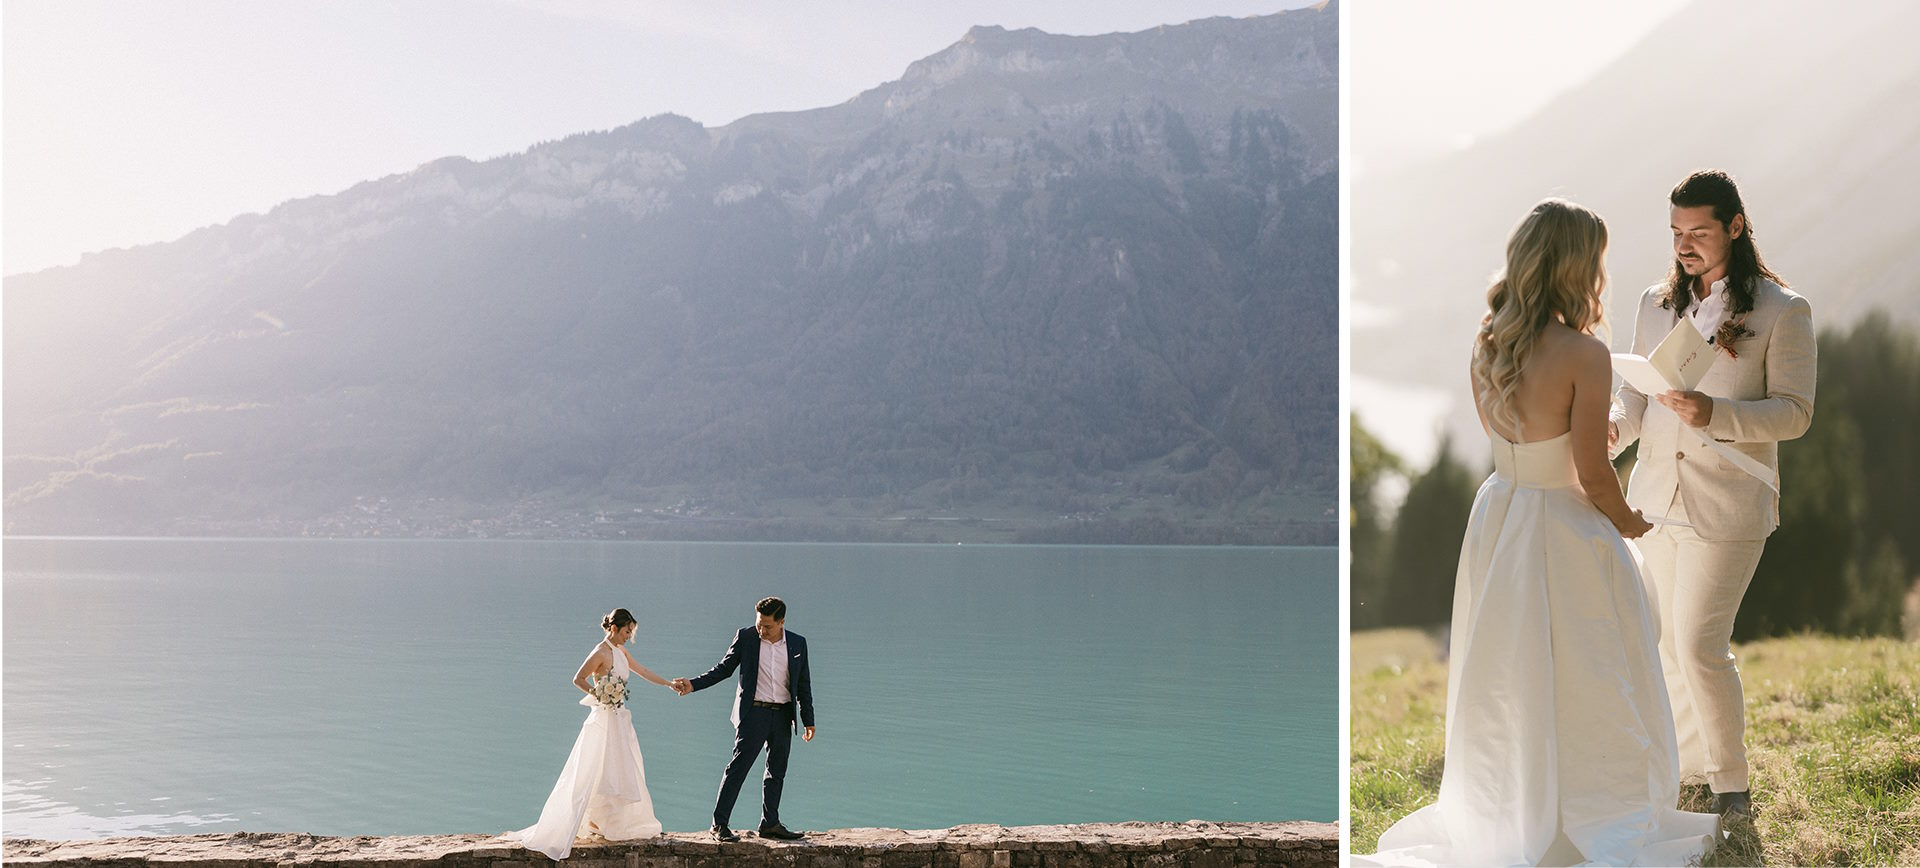 Swiss Alps Elopement Wedding Adventure